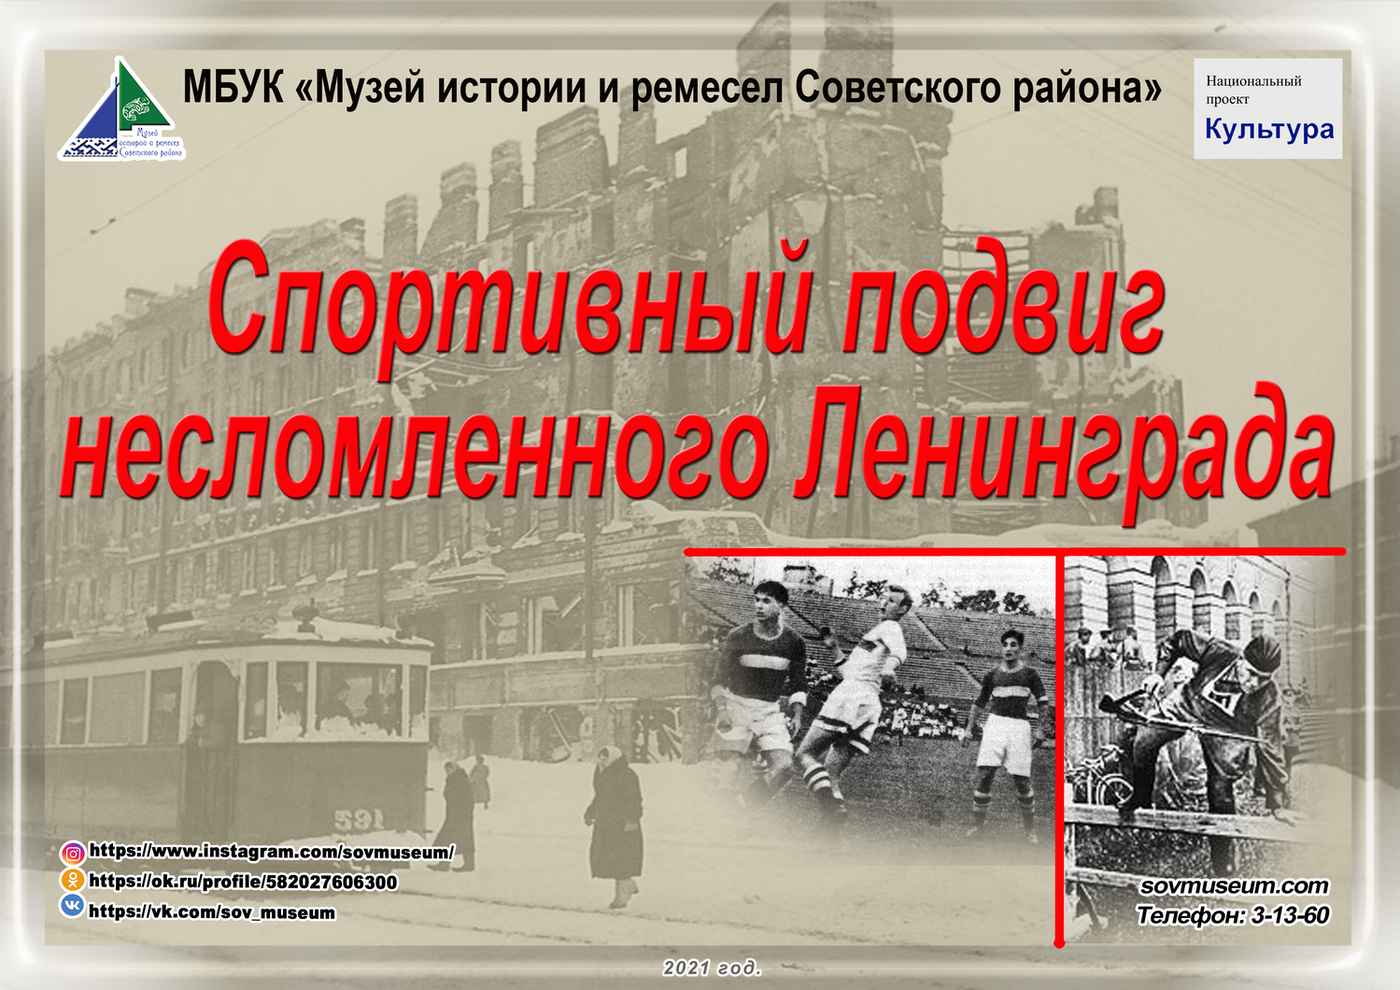 « Спортивный подвиг Блокадного Ленинграда»